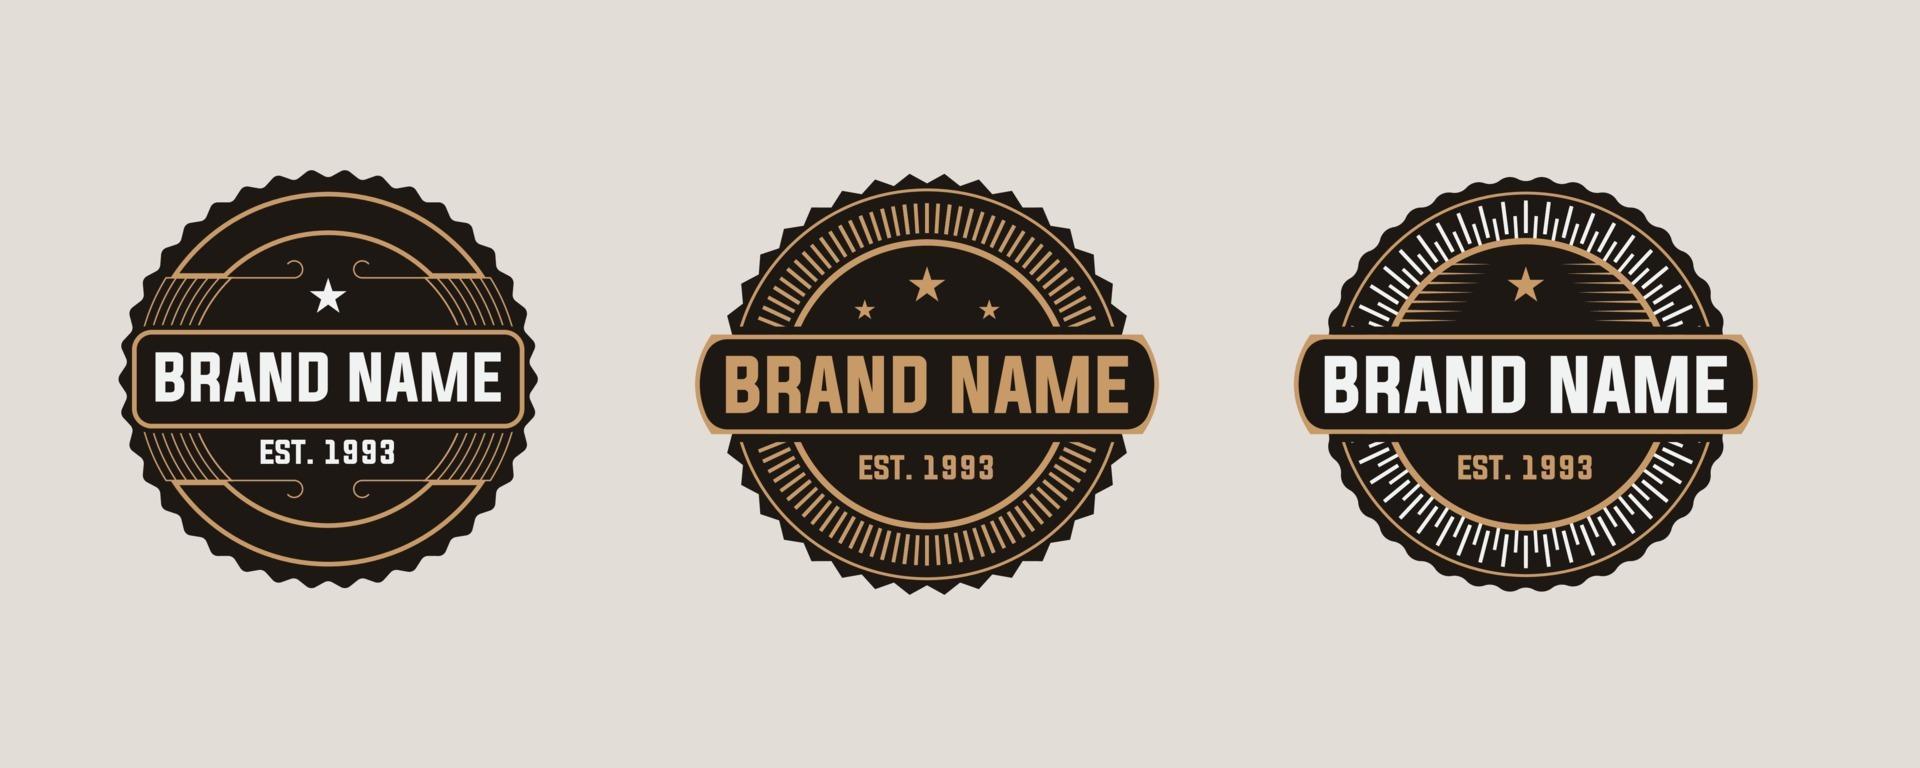 Brand name set vintage logo badges. Elegant Retro Label Emblem Logo design inspiration. vector